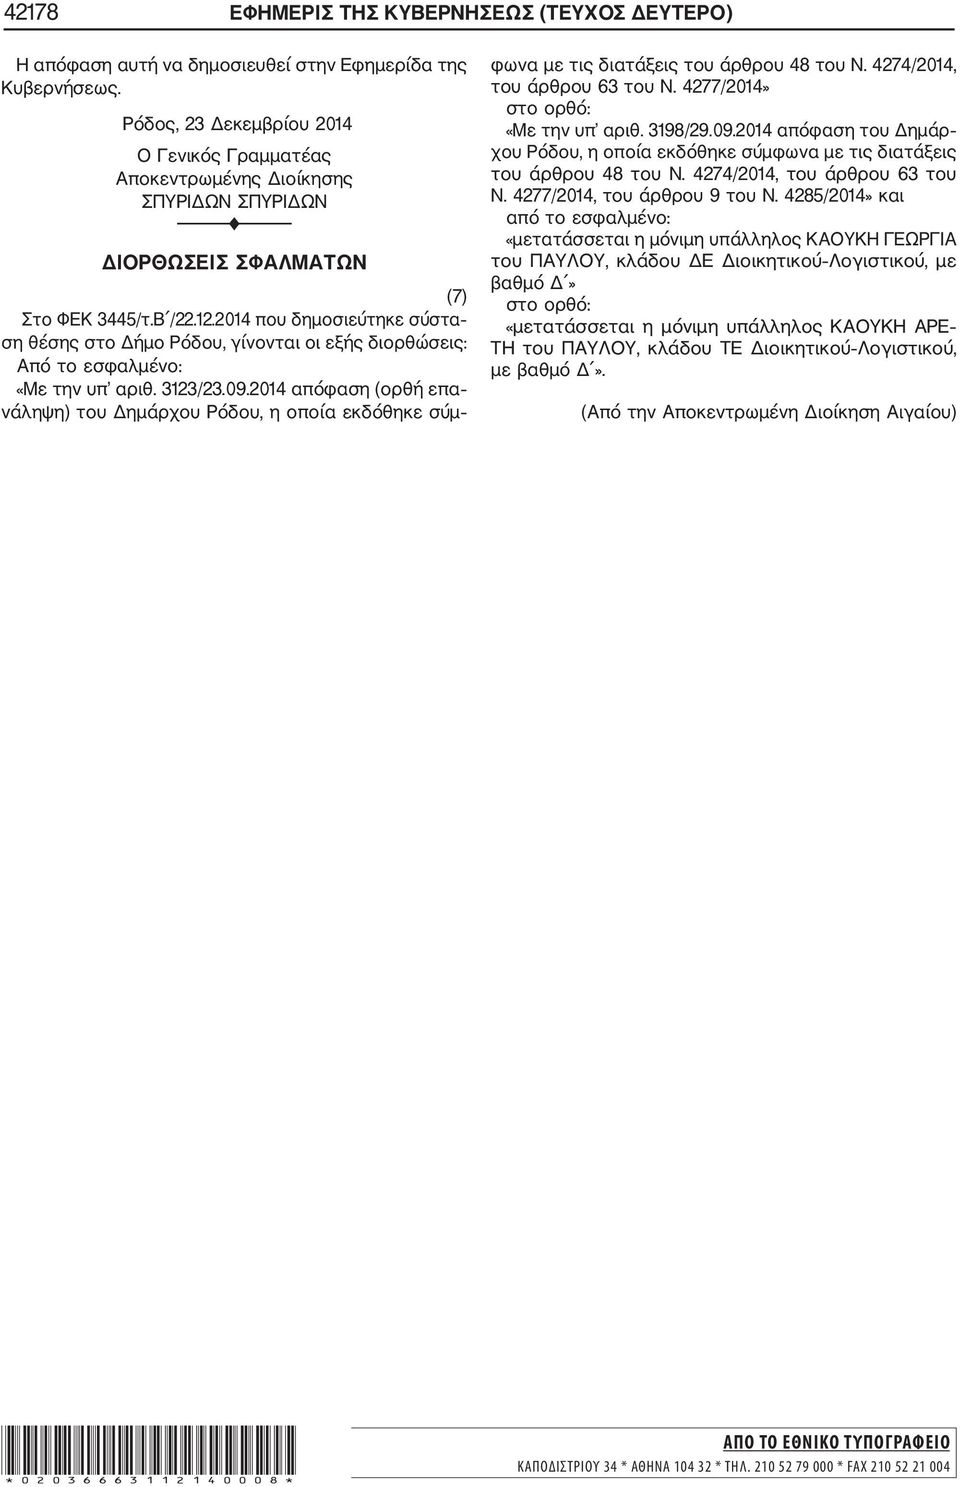 2014 απόφαση (ορθή επα νάληψη) του Δημάρχου Ρόδου, η οποία εκδόθηκε σύμ φωνα με τις διατάξεις του άρθρου 48 του Ν. 4274/2014, του άρθρου 63 του Ν. 4277/2014» στο ορθό: «Με την υπ αριθ. 3198/29.09.